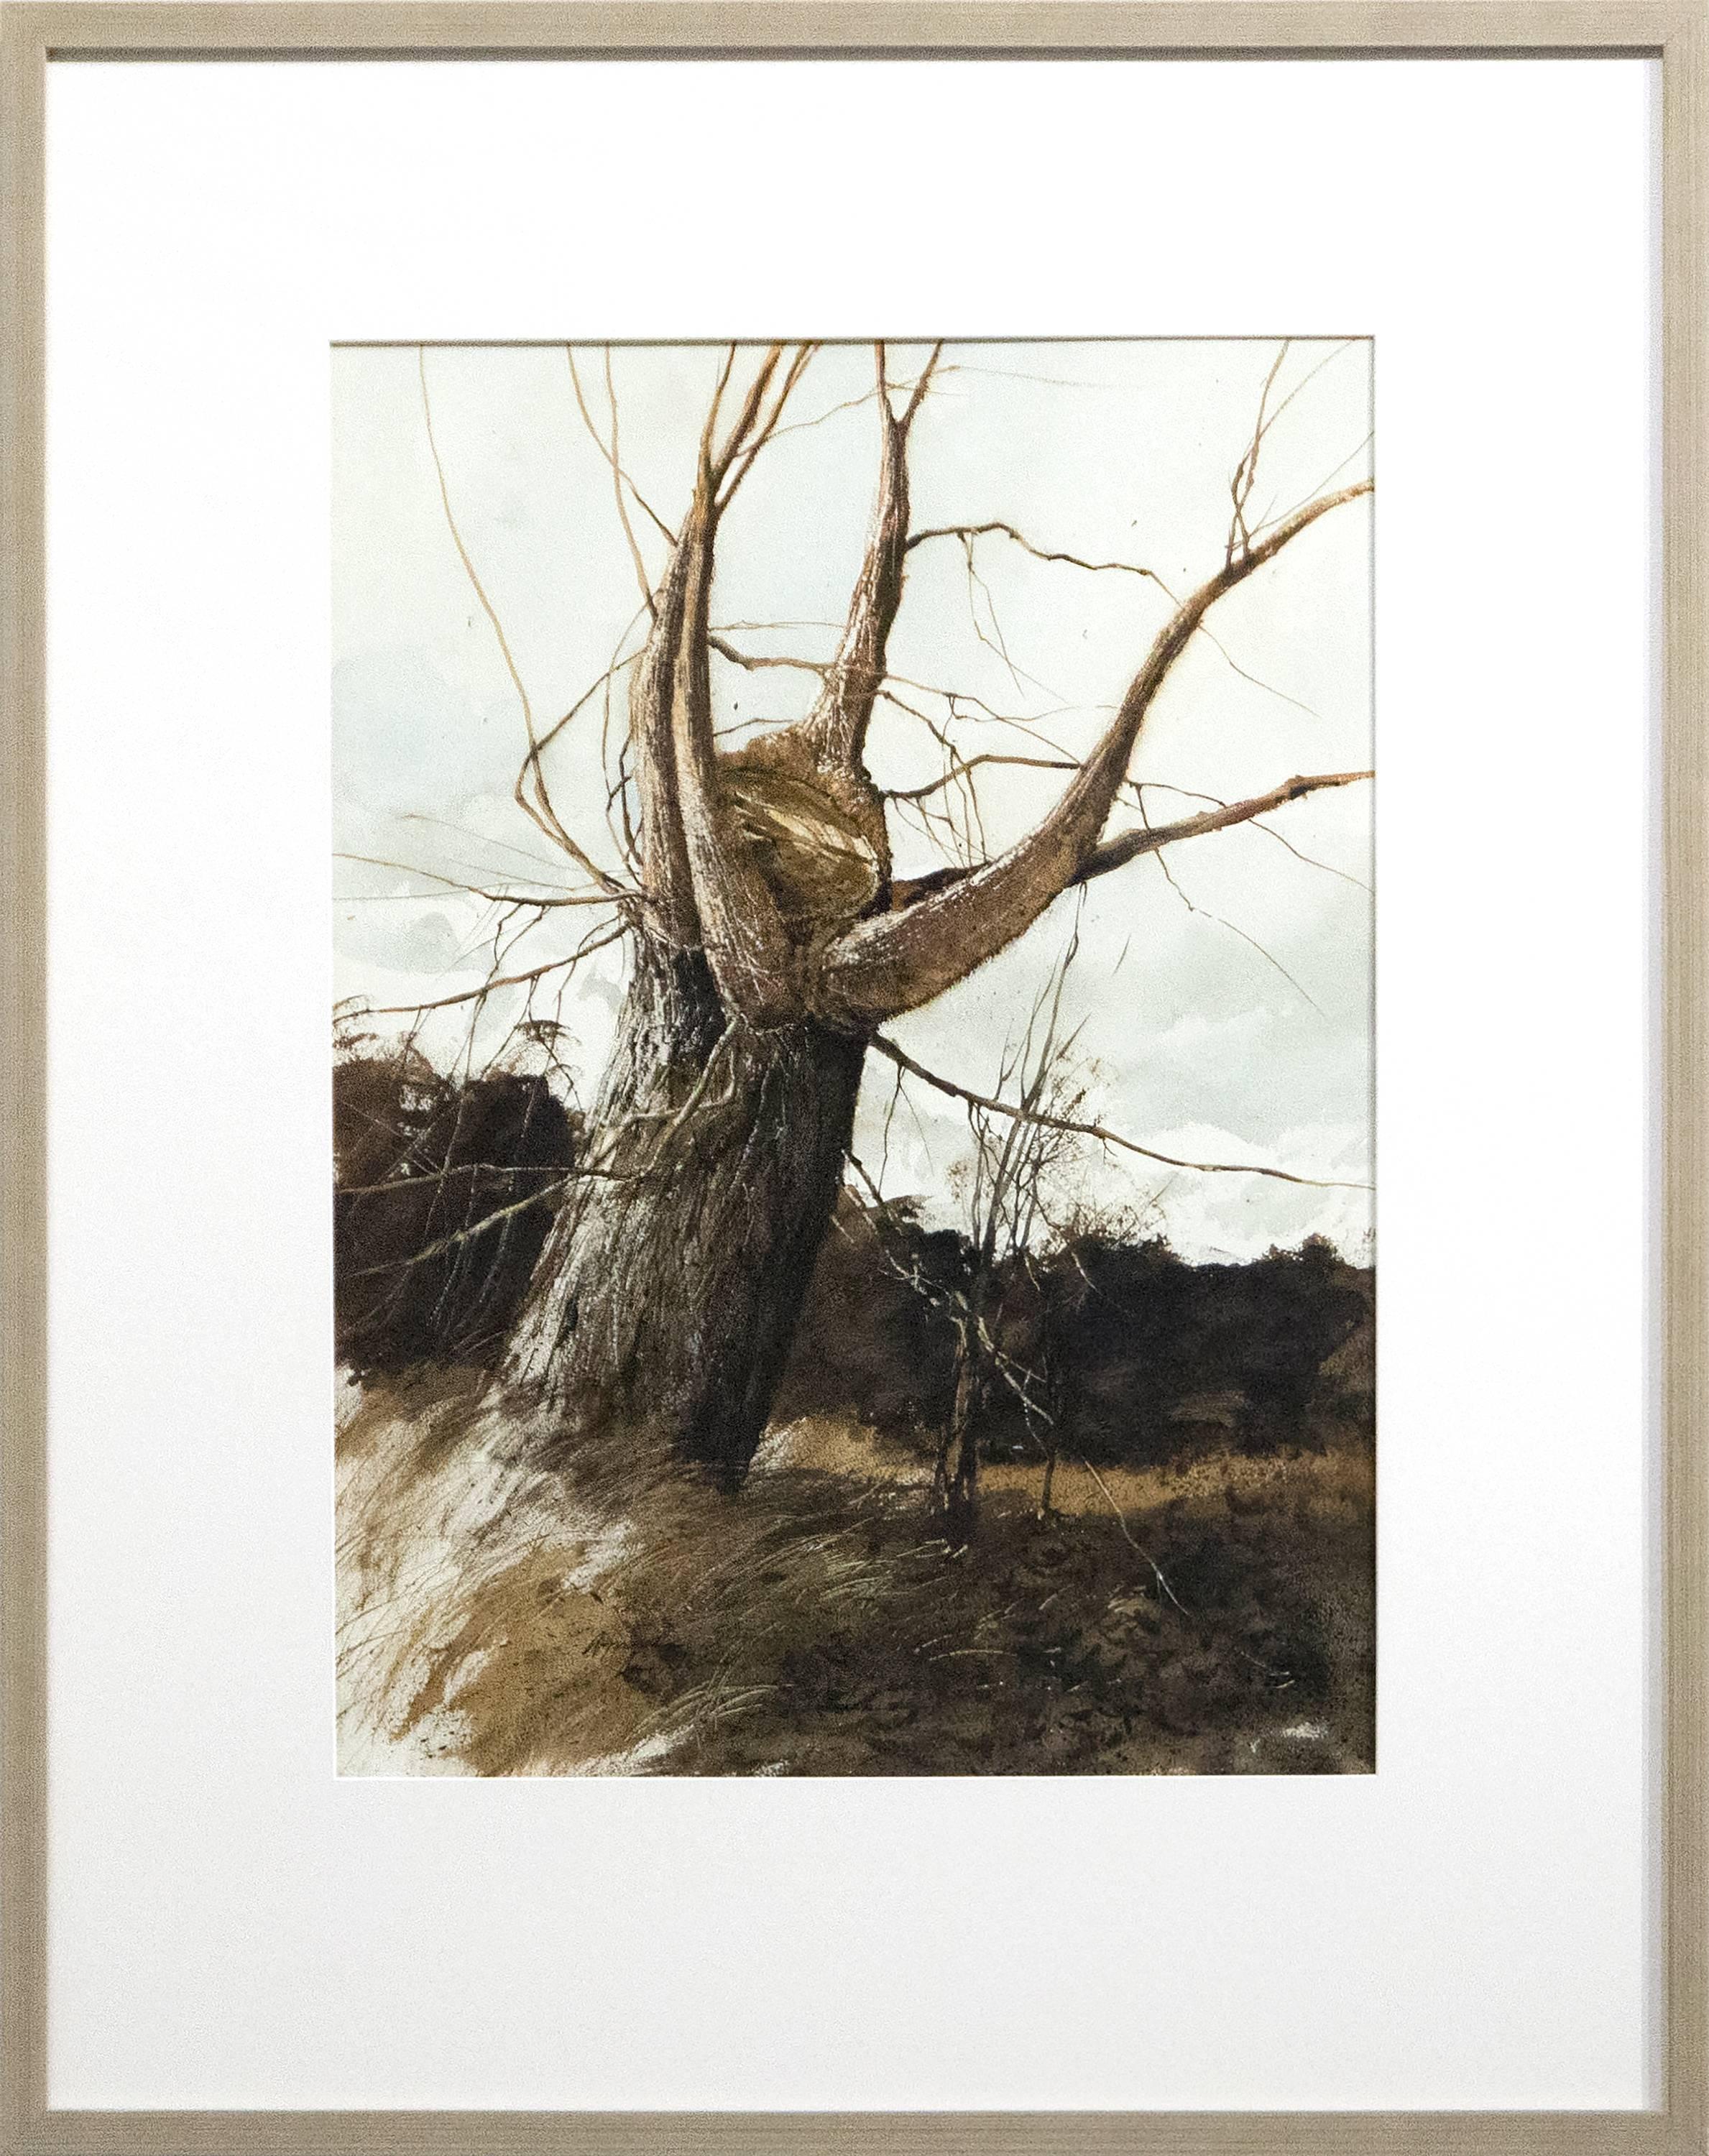 Nouvelles branches en forme de tempête surplombant - Art de Gregory Sumida